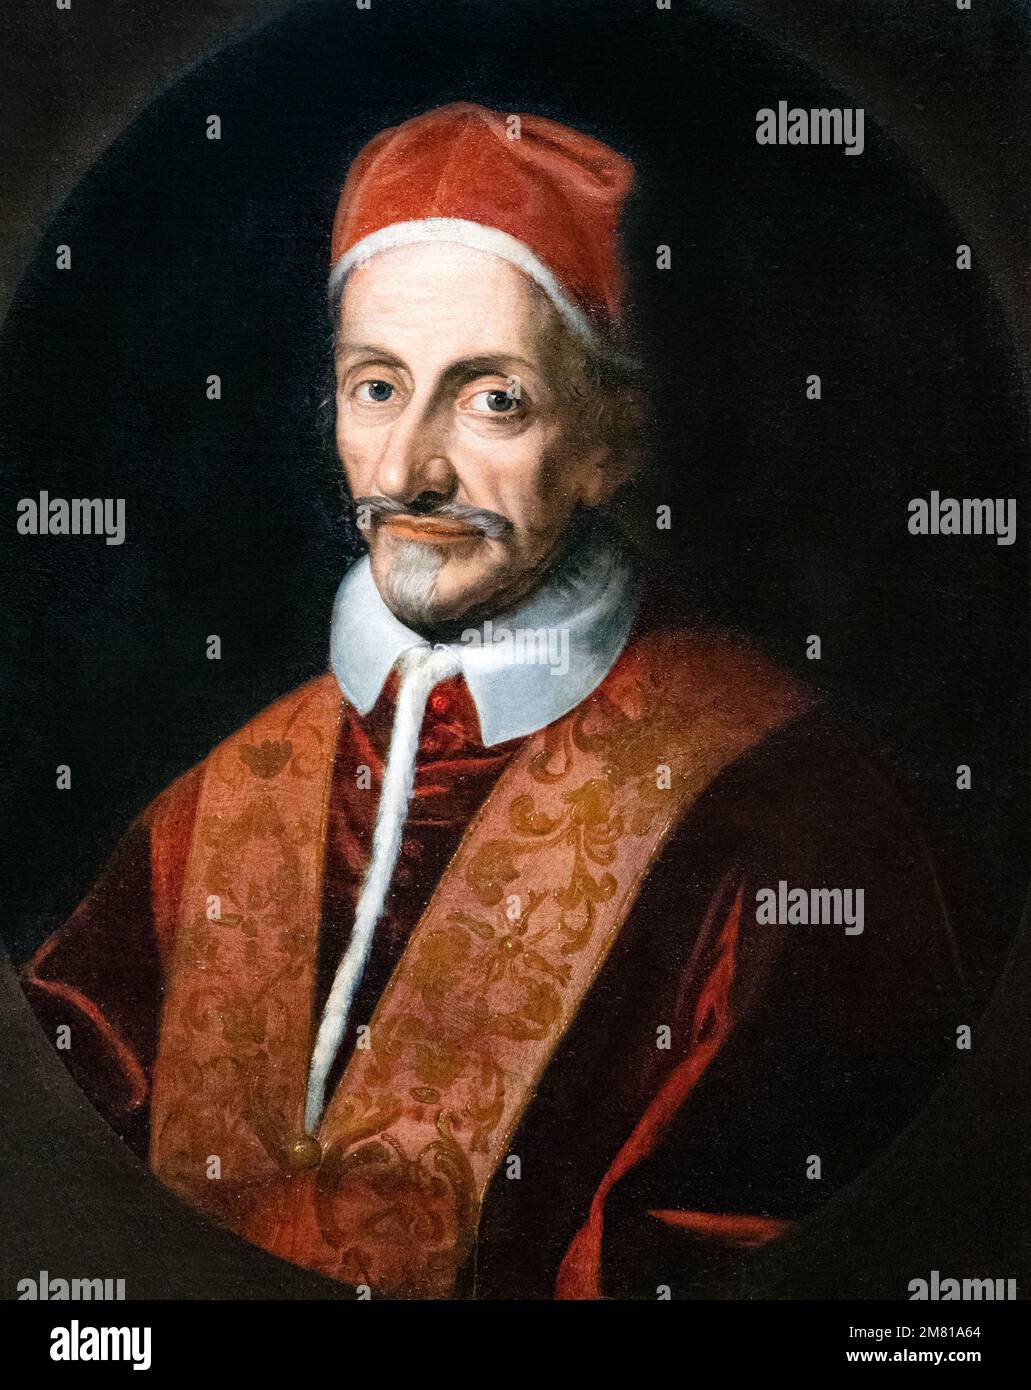 Art du 17th siècle; Portrait de peinture à l'huile du Pape Innocent XI, peint en Italie, vers 1680, artiste inconnu; Musée du Château de Wawel, Cracovie Pologne Banque D'Images